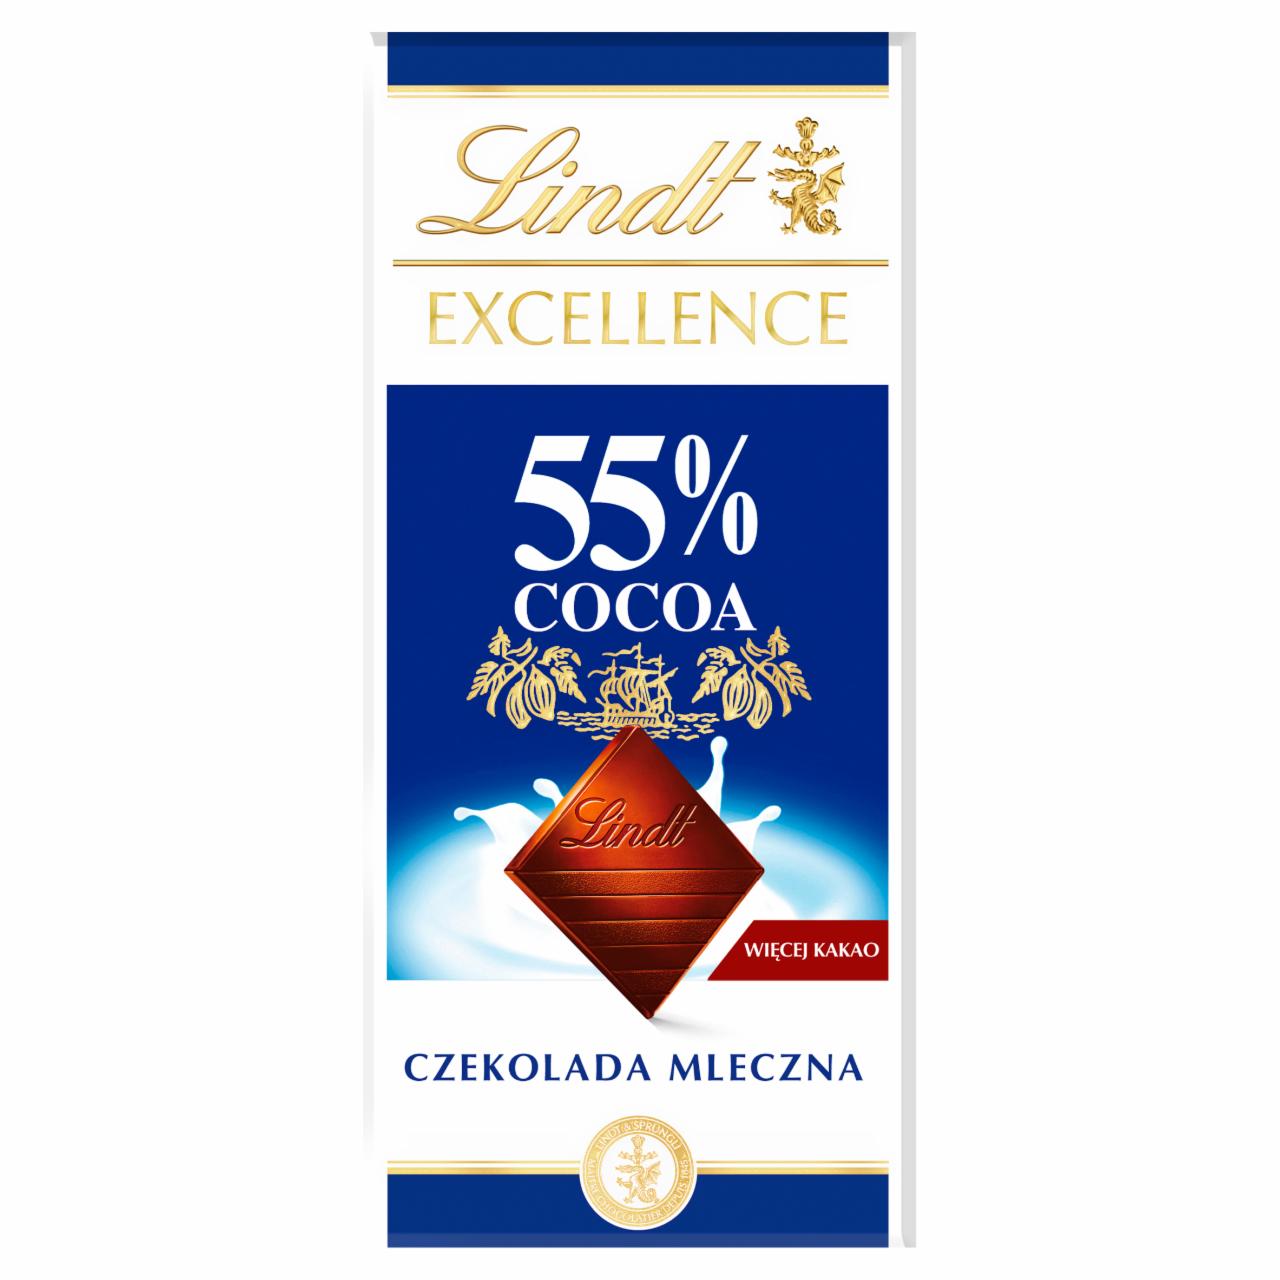 Zdjęcia - Lindt Excellence 55% Cocoa Czekolada mleczna 80 g